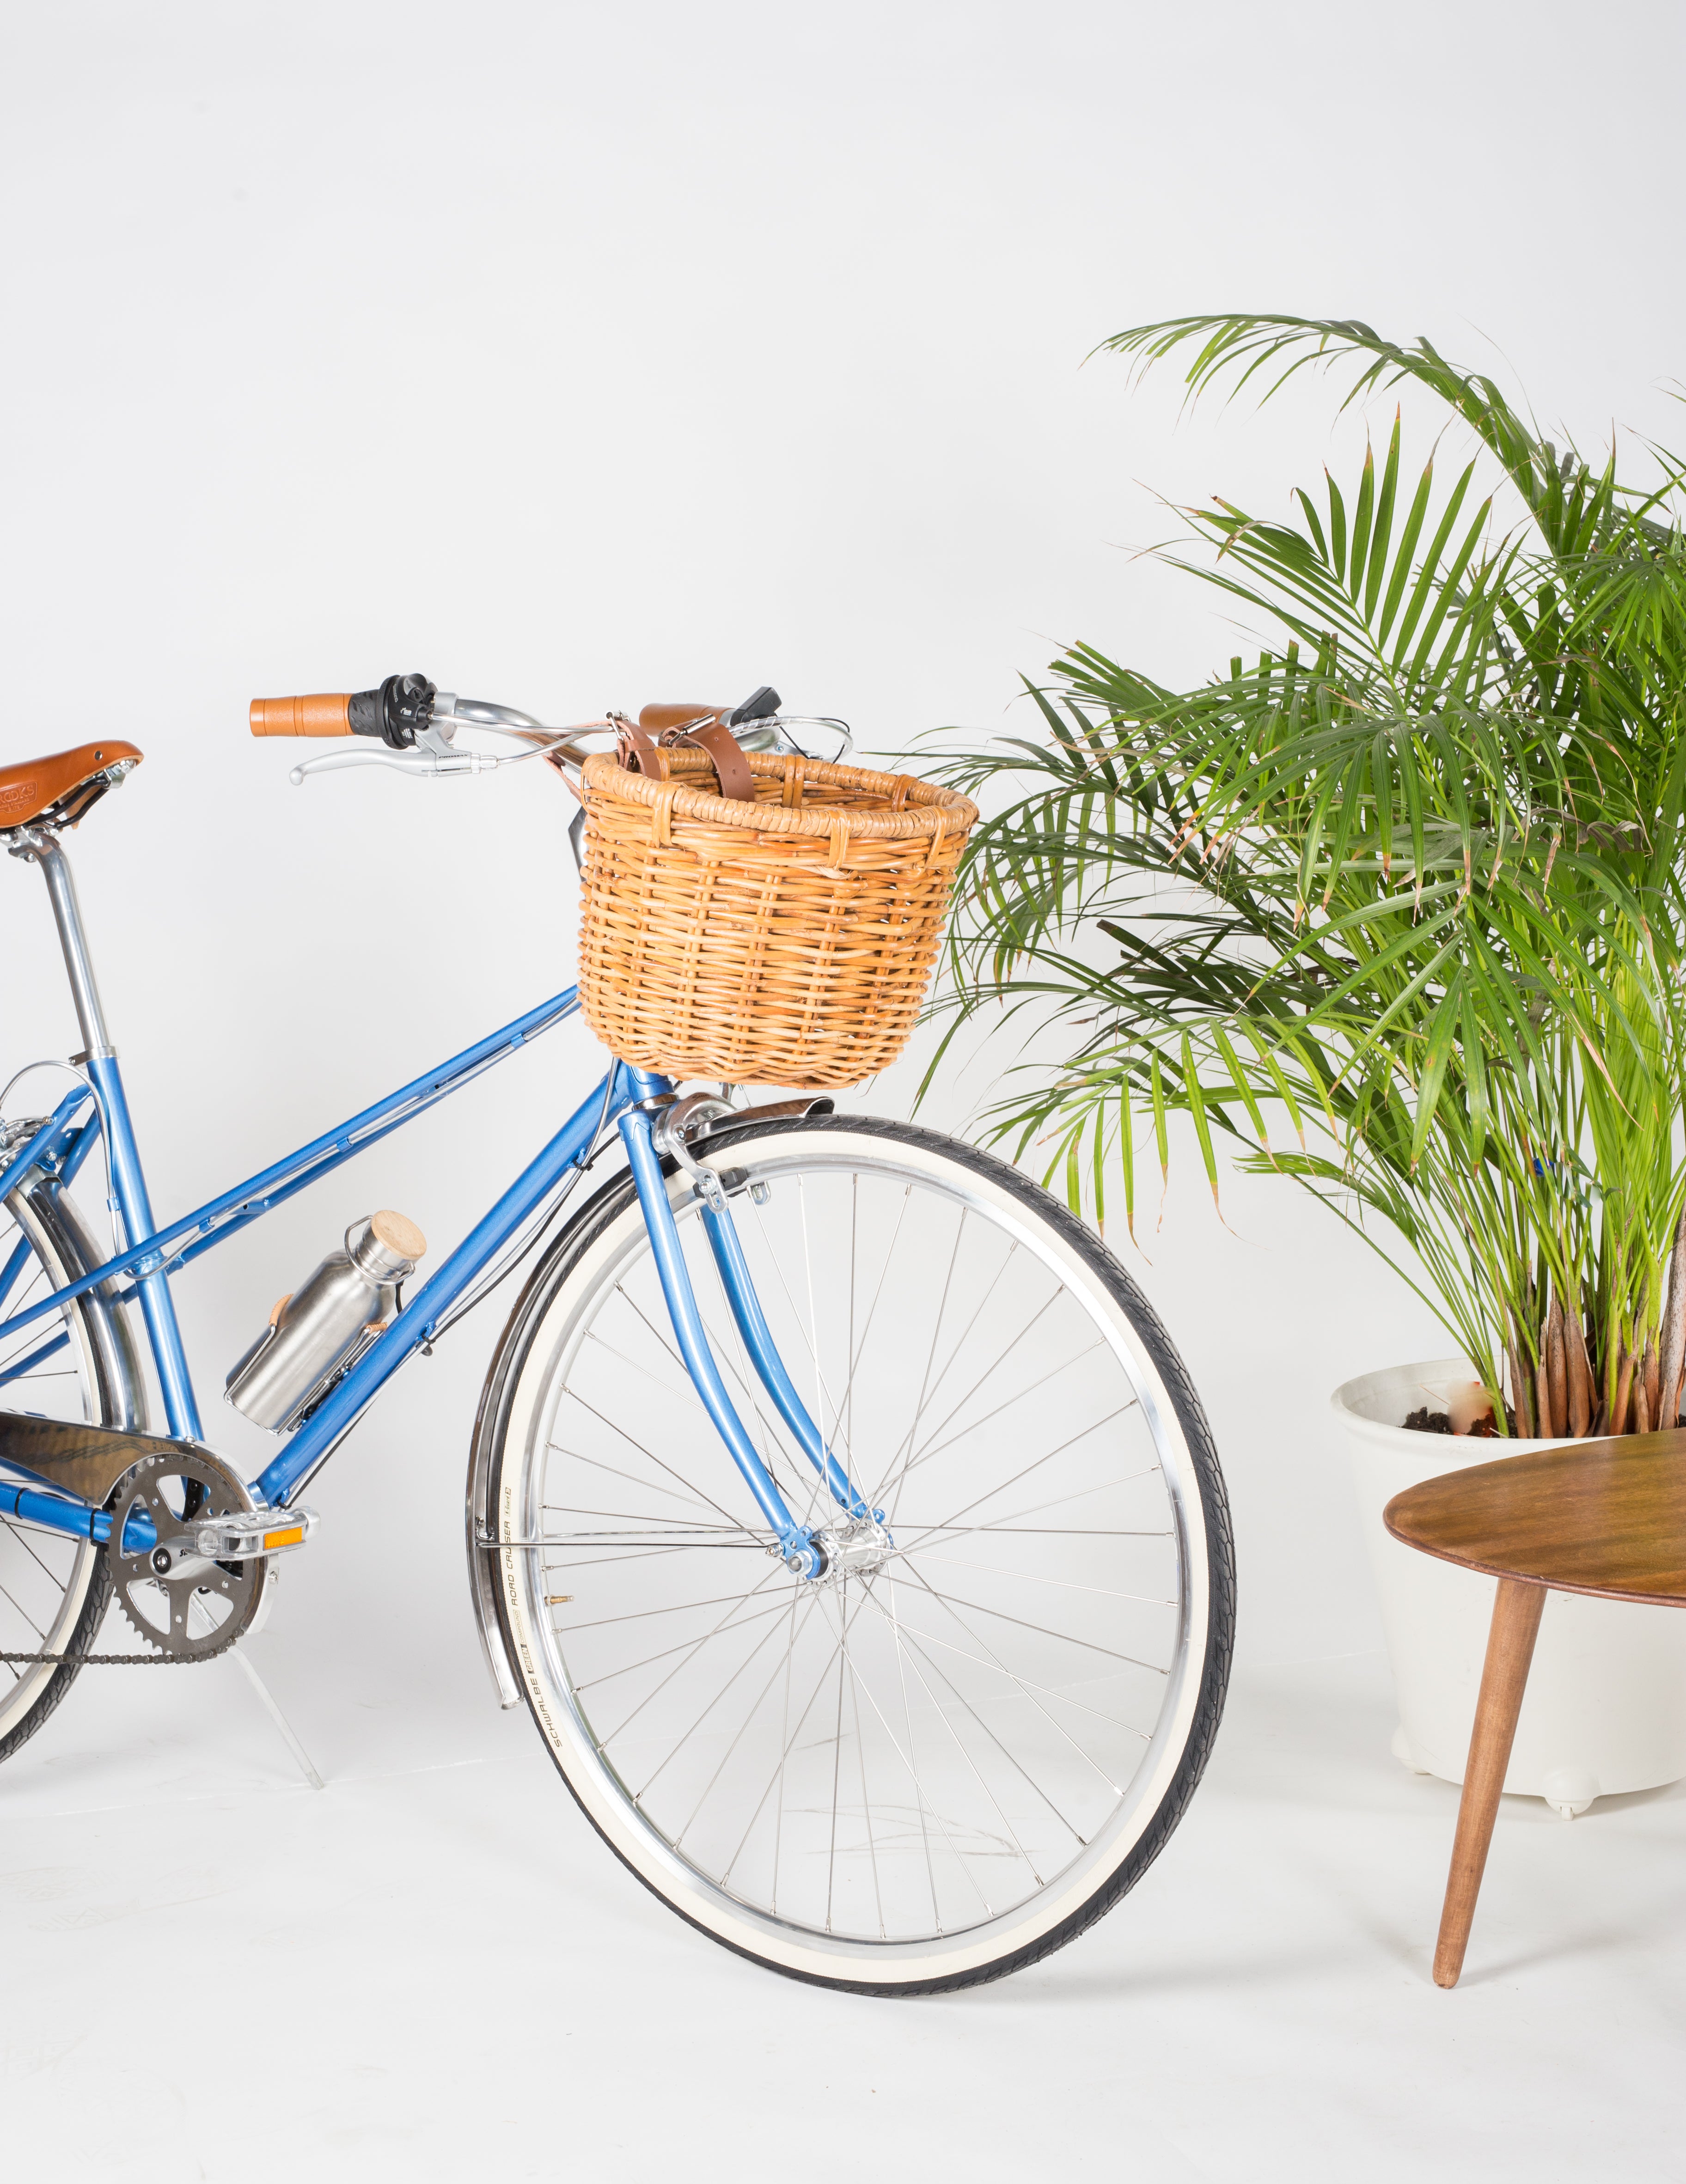 Encuentra la mejor cesta para tu bicicleta